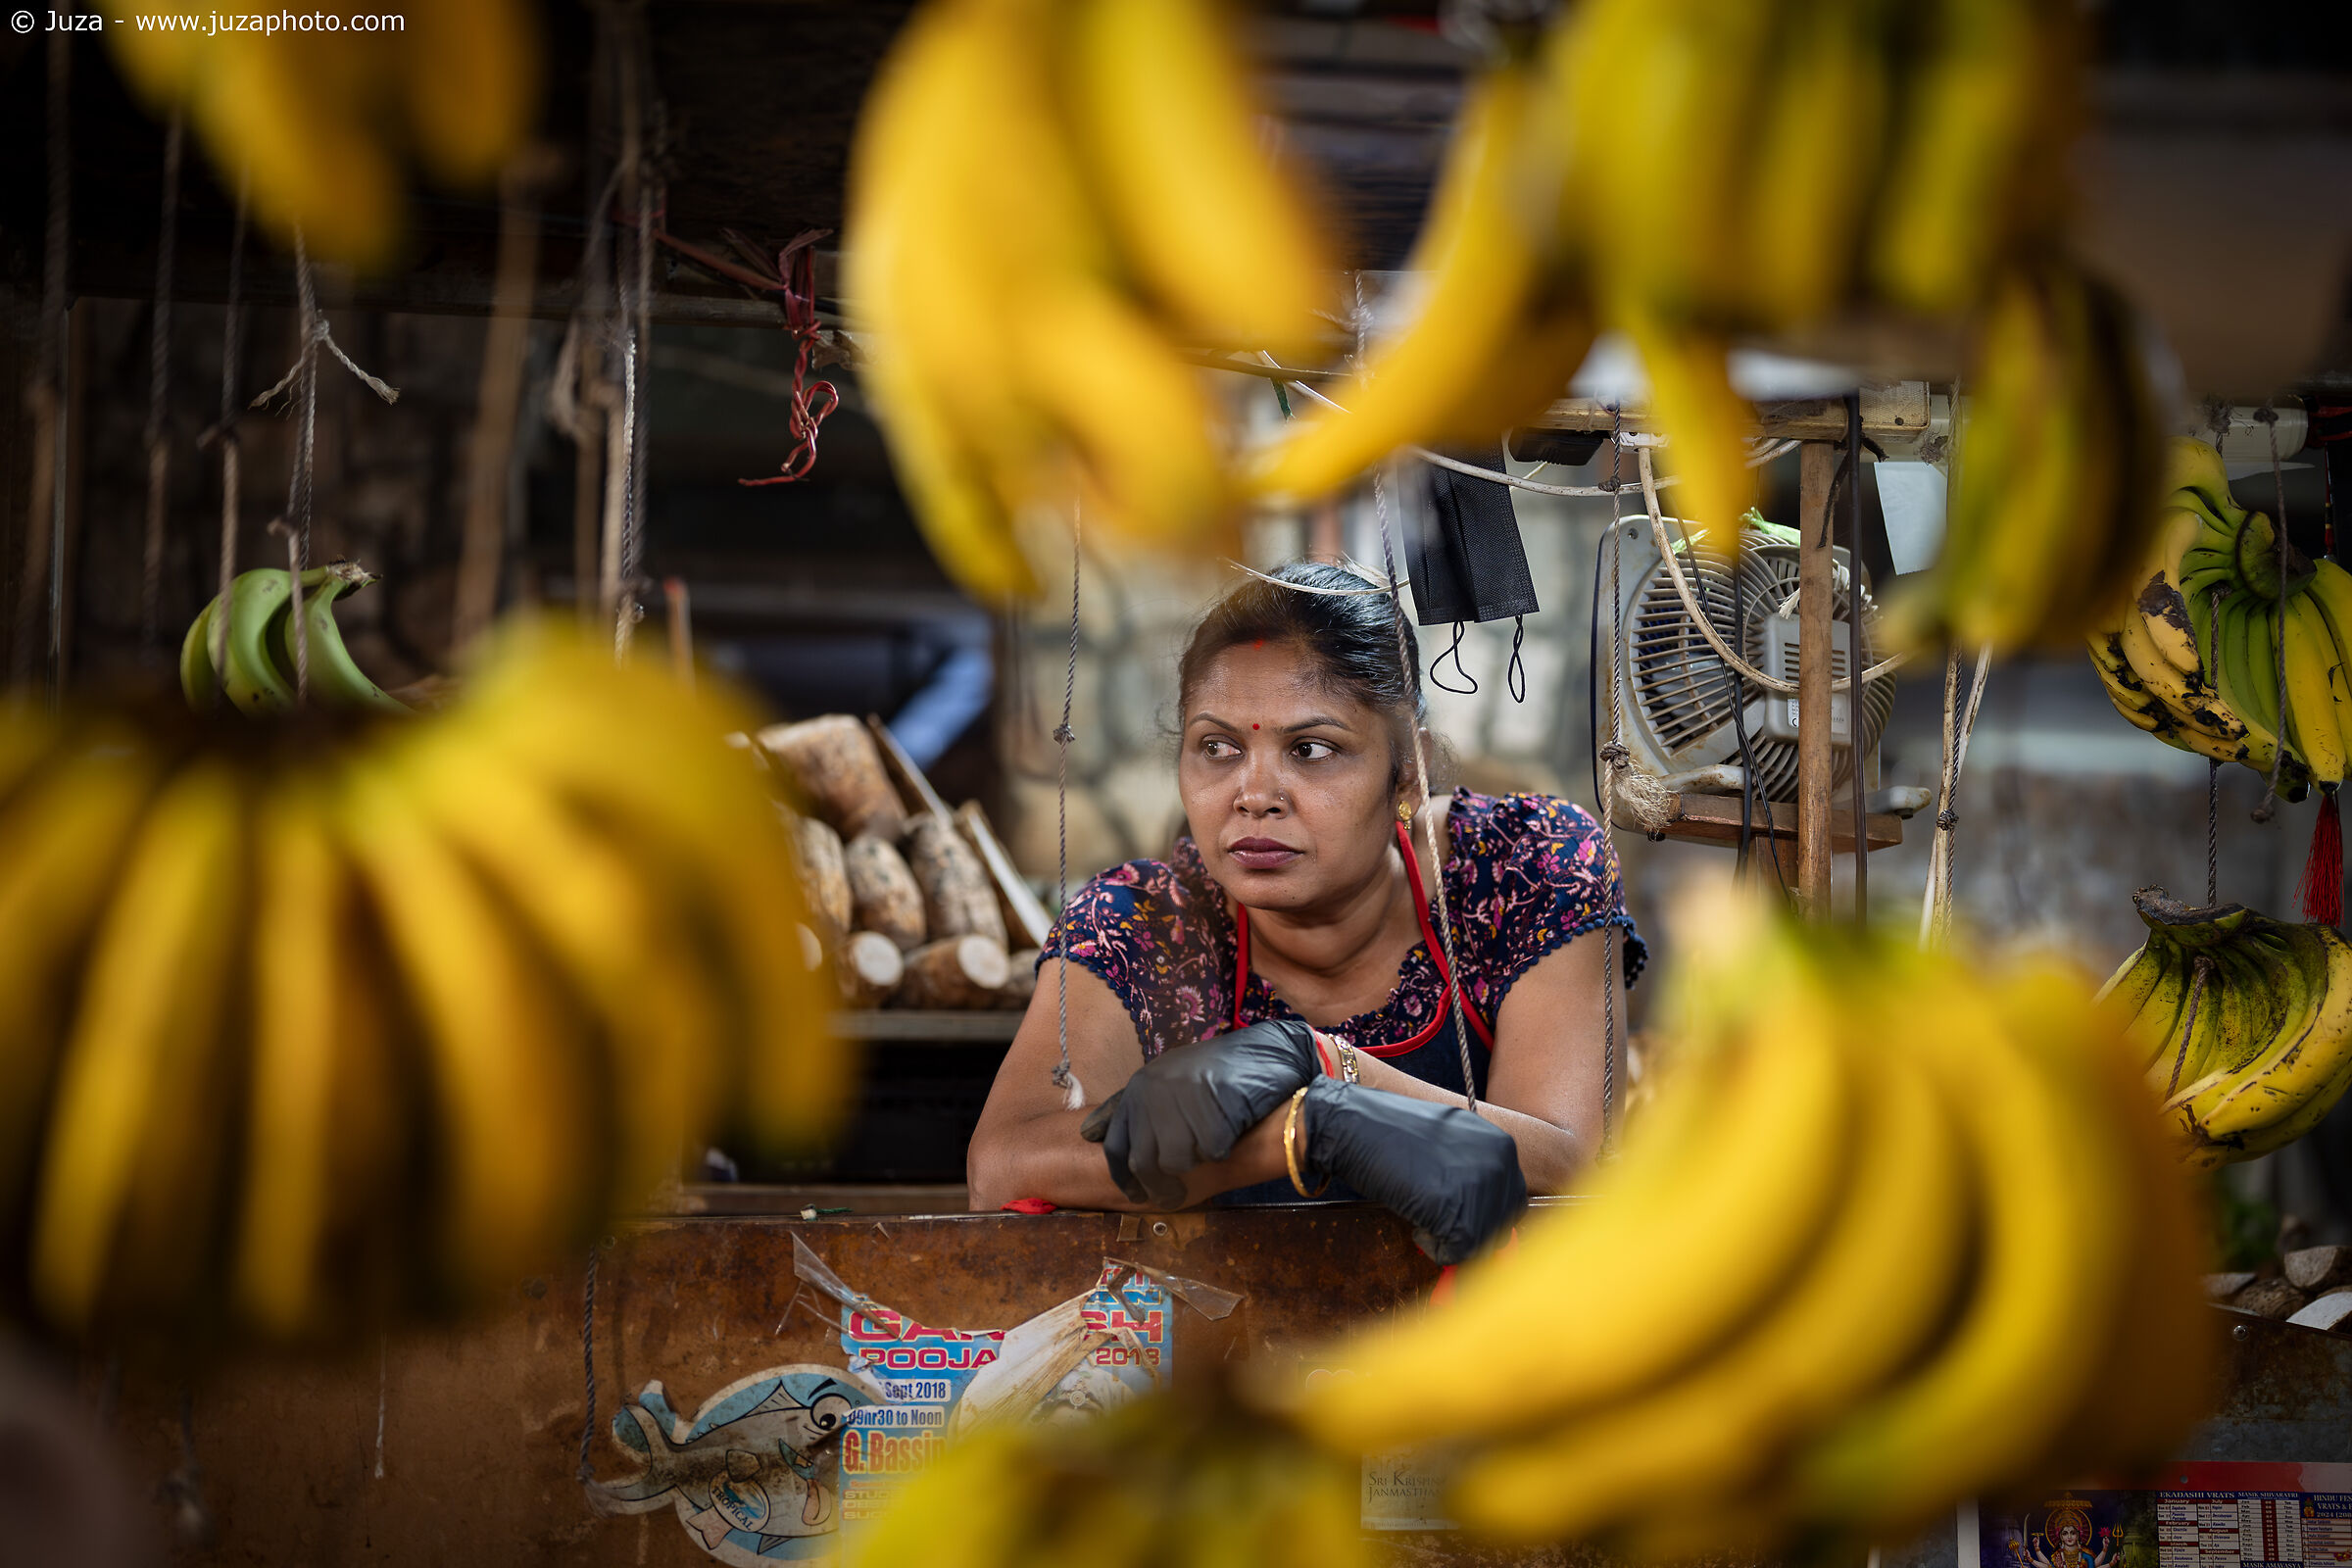 Mercato di Port Louis, venditrice di banane...